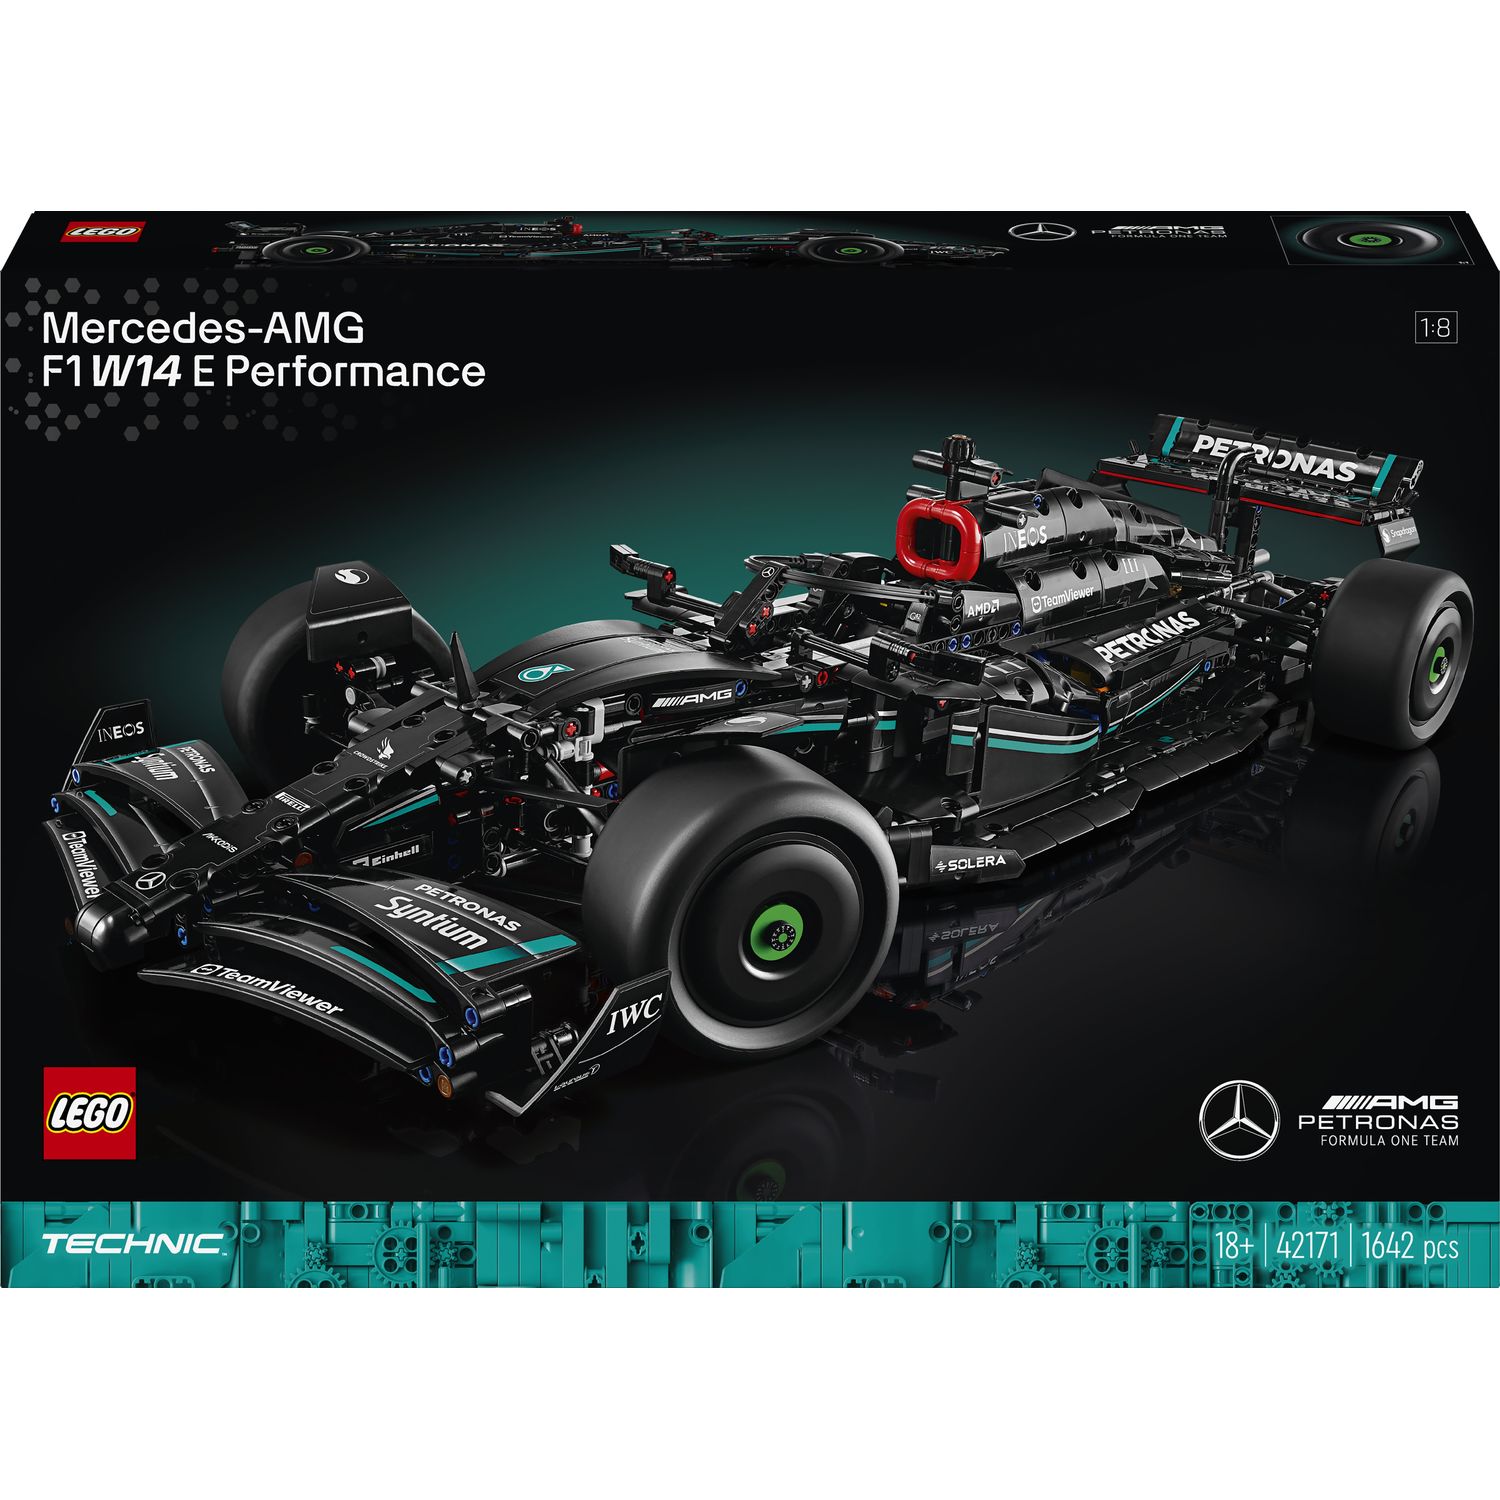 Конструктор LEGO Technic Mercedes-AMG F1 W14 E Performance 1642 детали (42171) - фото 1